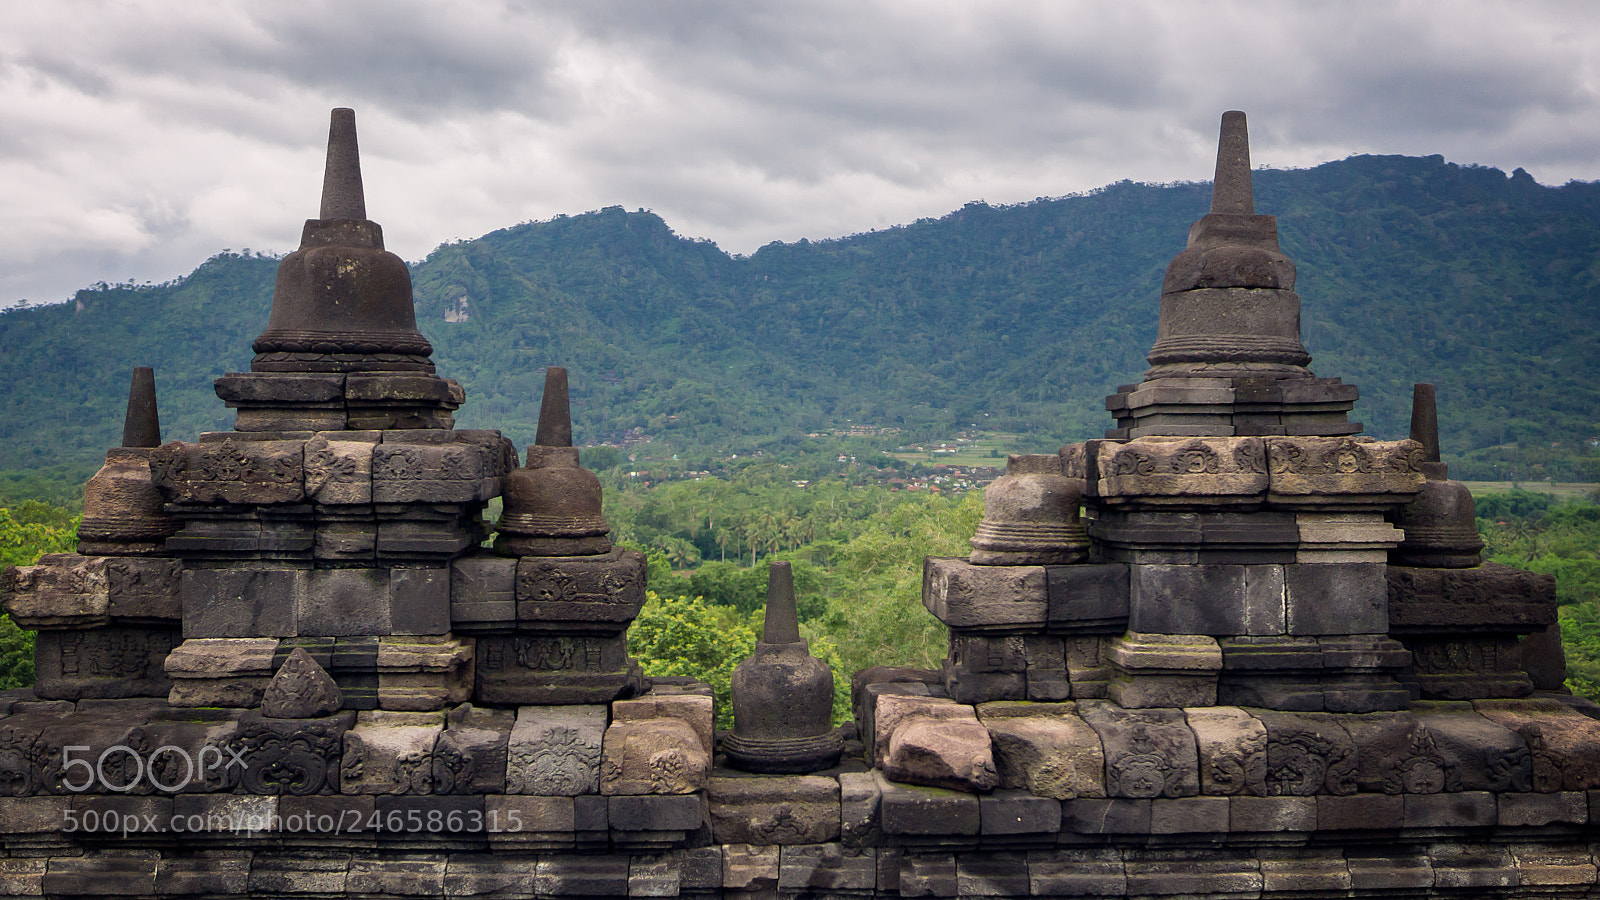 Sony SLT-A77 sample photo. Borobudur wall photography